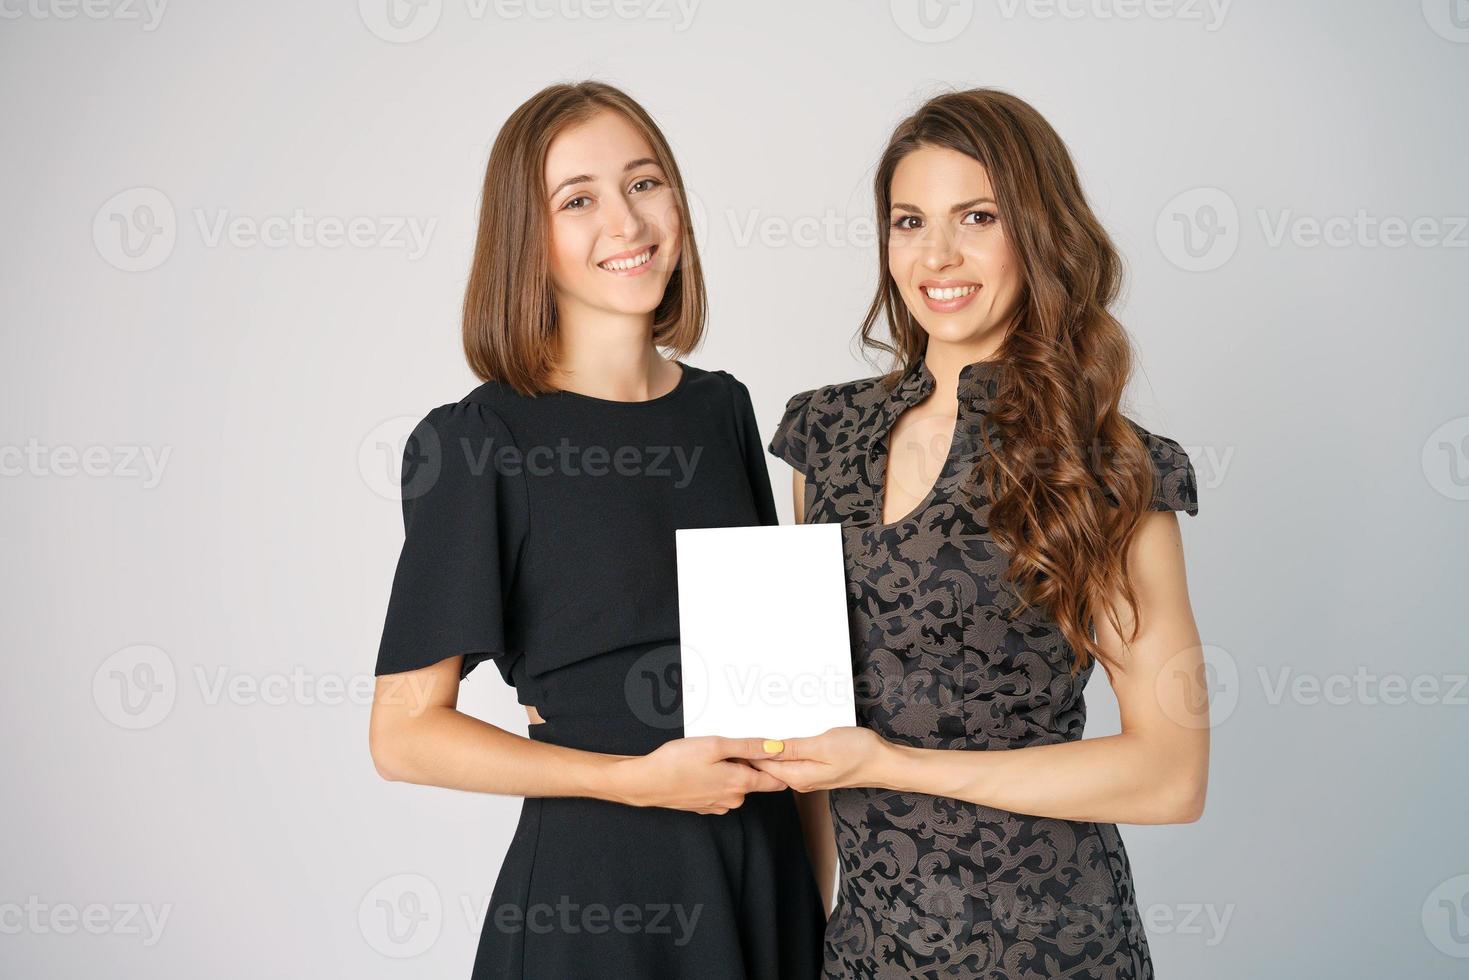 zwei glückliche junge frauen, die ein modell im hintergrund halten foto